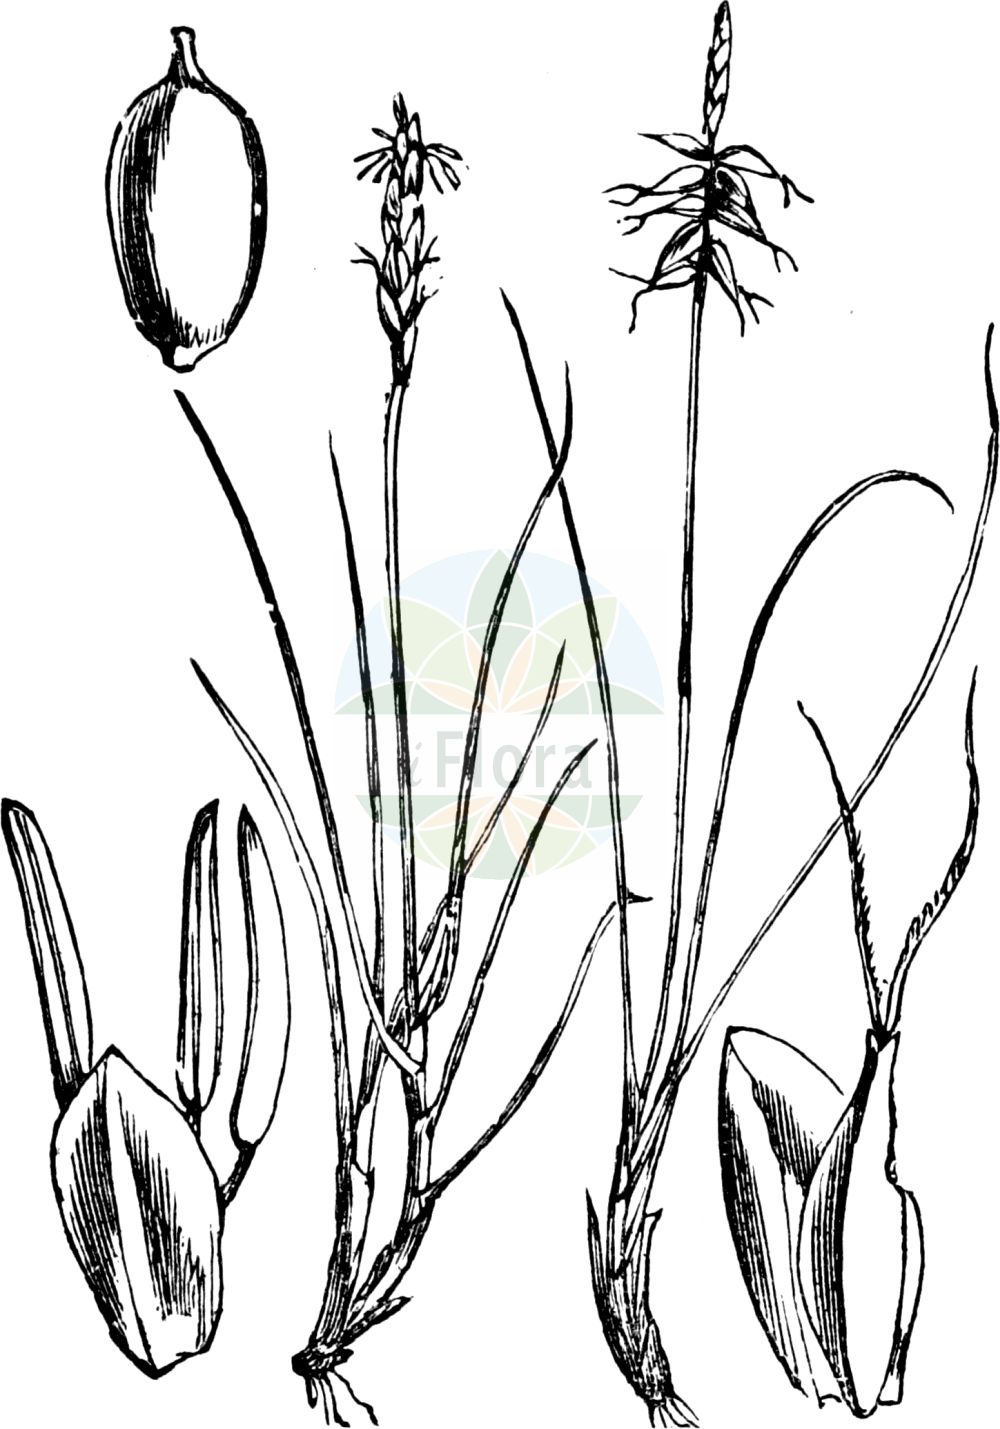 Historische Abbildung von Carex pulicaris (Floh-Segge - Flea Sedge). Das Bild zeigt Blatt, Bluete, Frucht und Same. ---- Historical Drawing of Carex pulicaris (Floh-Segge - Flea Sedge). The image is showing leaf, flower, fruit and seed.(Carex pulicaris,Floh-Segge,Flea Sedge,Carex pulicaris,Vignea pulicaris,Floh-Segge,Flea Sedge,Carex,Segge,Sedge,Cyperaceae,Sauergräser,Sedge family,Blatt,Bluete,Frucht,Same,leaf,flower,fruit,seed,Fitch et al. (1880))